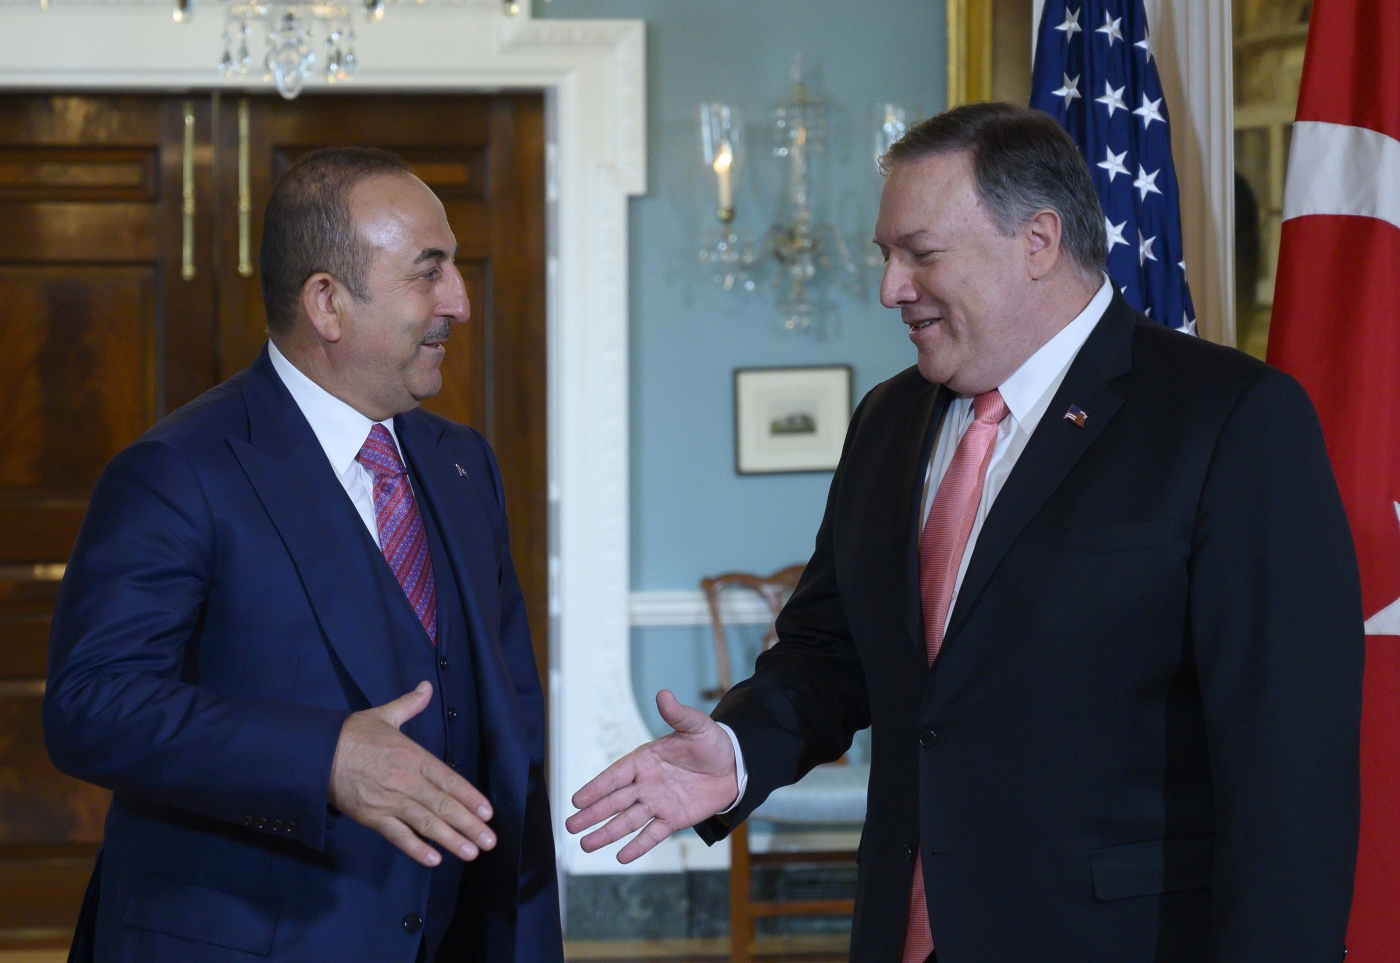 Le secrétaire d’État américain Mike Pompeo rencontre le ministre turc des Affaires étrangères Mevlüt Çavuşoğlu au département d’État des États-Unis à Washington, le 3 avril 2019 (AFP)